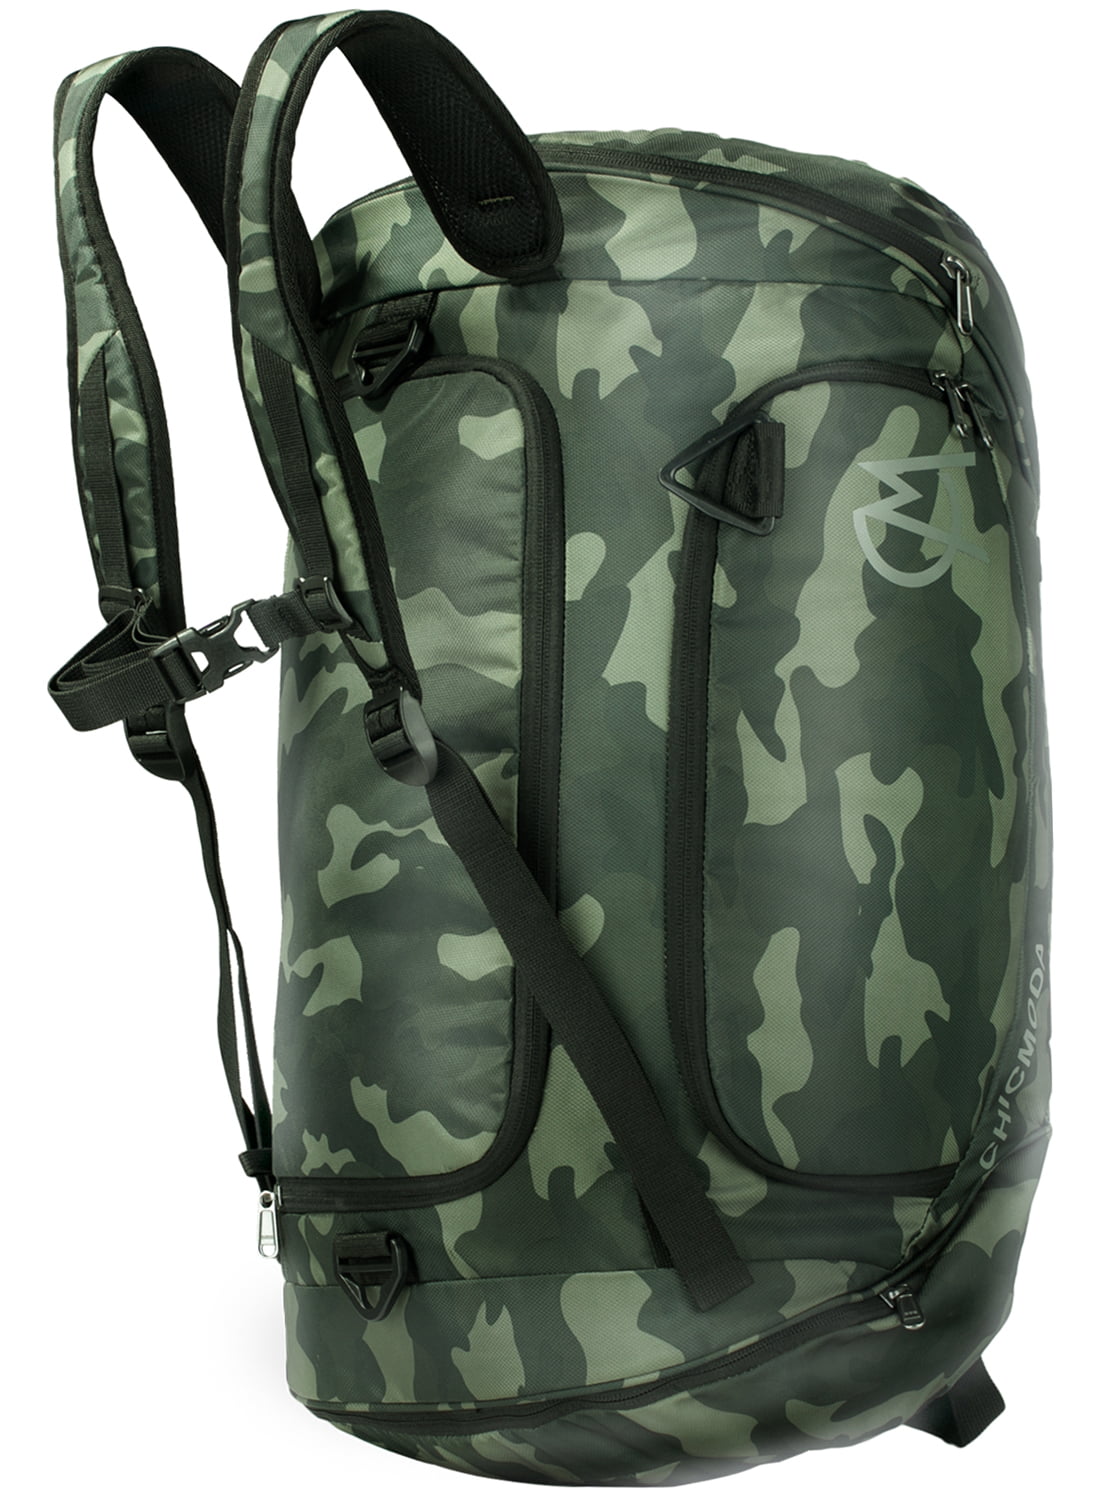 CHICMODA Gym Bag - Waterproof Travel Duffle Bag Workout Sport Shoulder Luggage Bag for Men ...